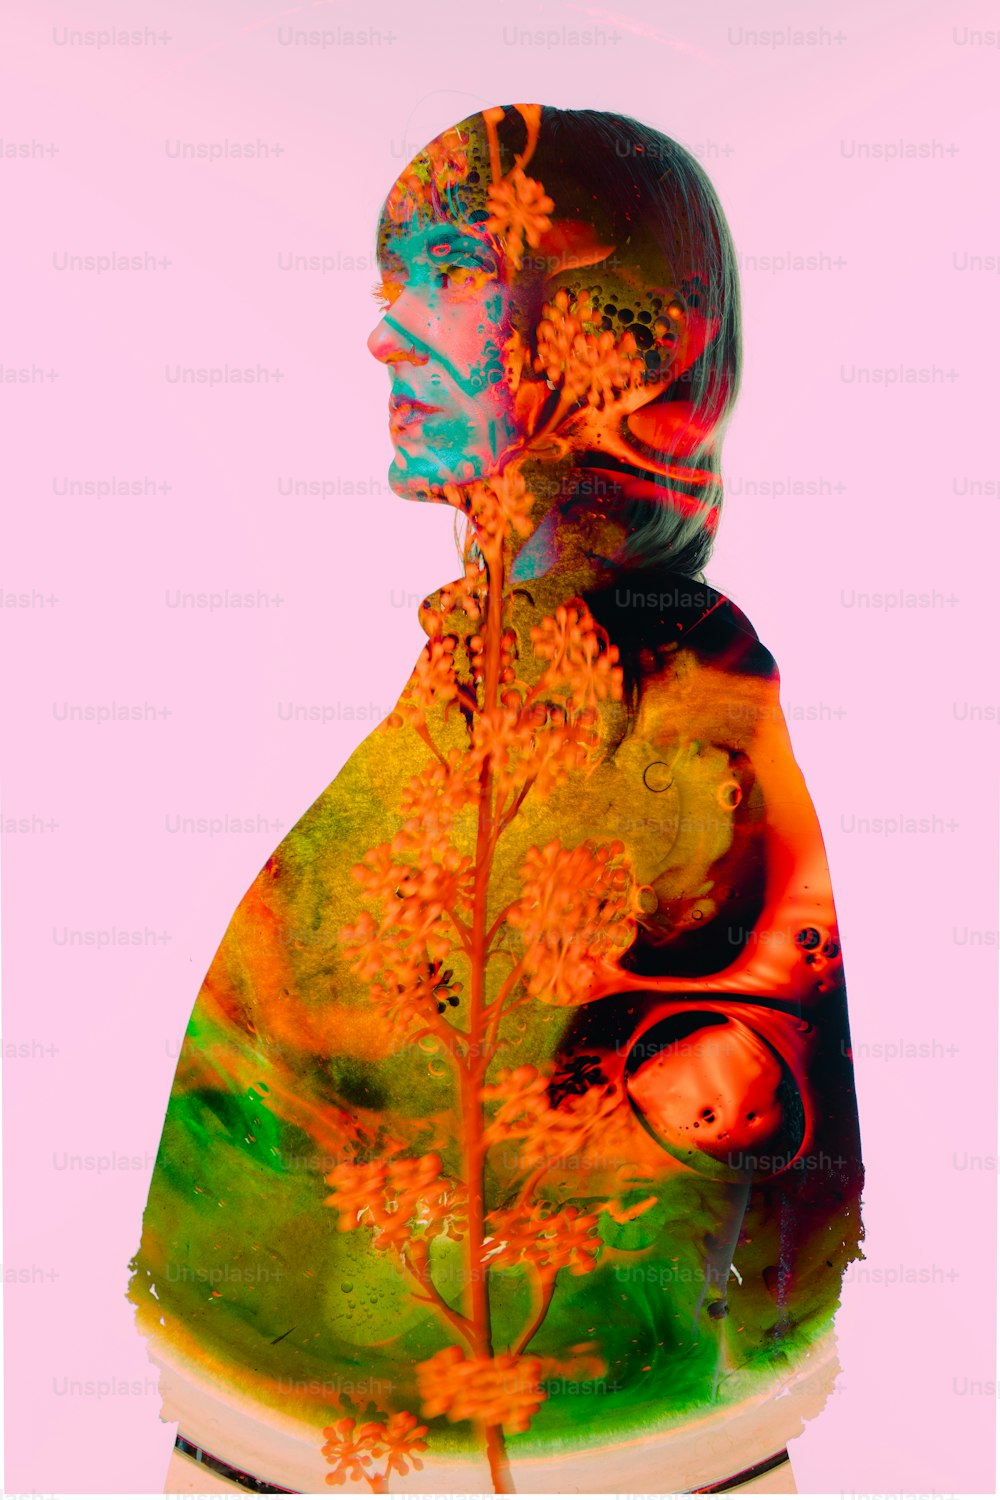 o rosto de uma mulher é mostrado em uma imagem multicolorida